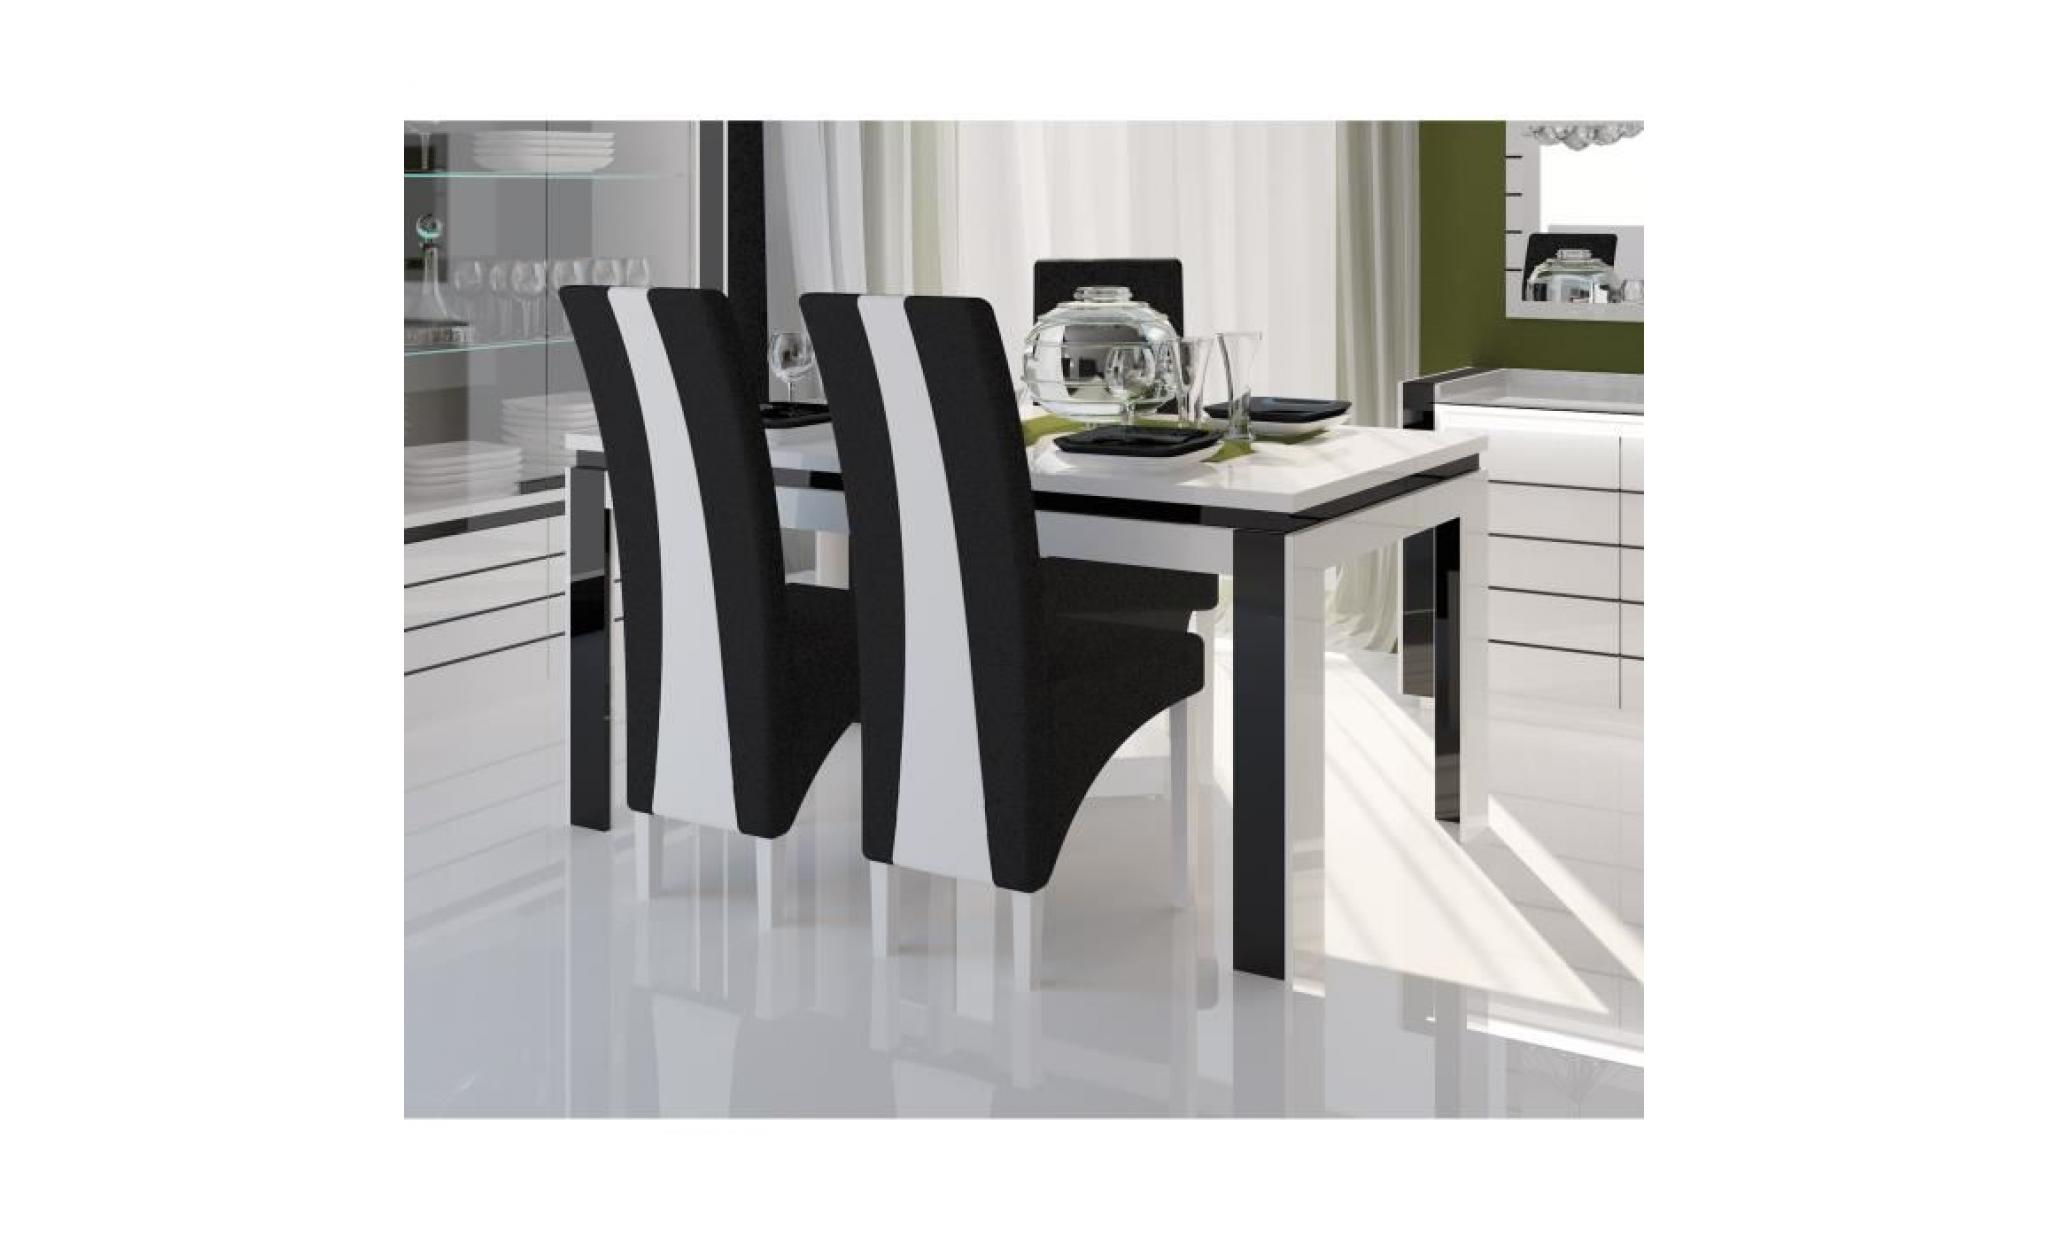 price factory   salle à manger complète lina blanche et noire. table 160 cm + buffet + 3 x miroirs + vaisselier (led) + 6 chaises pas cher